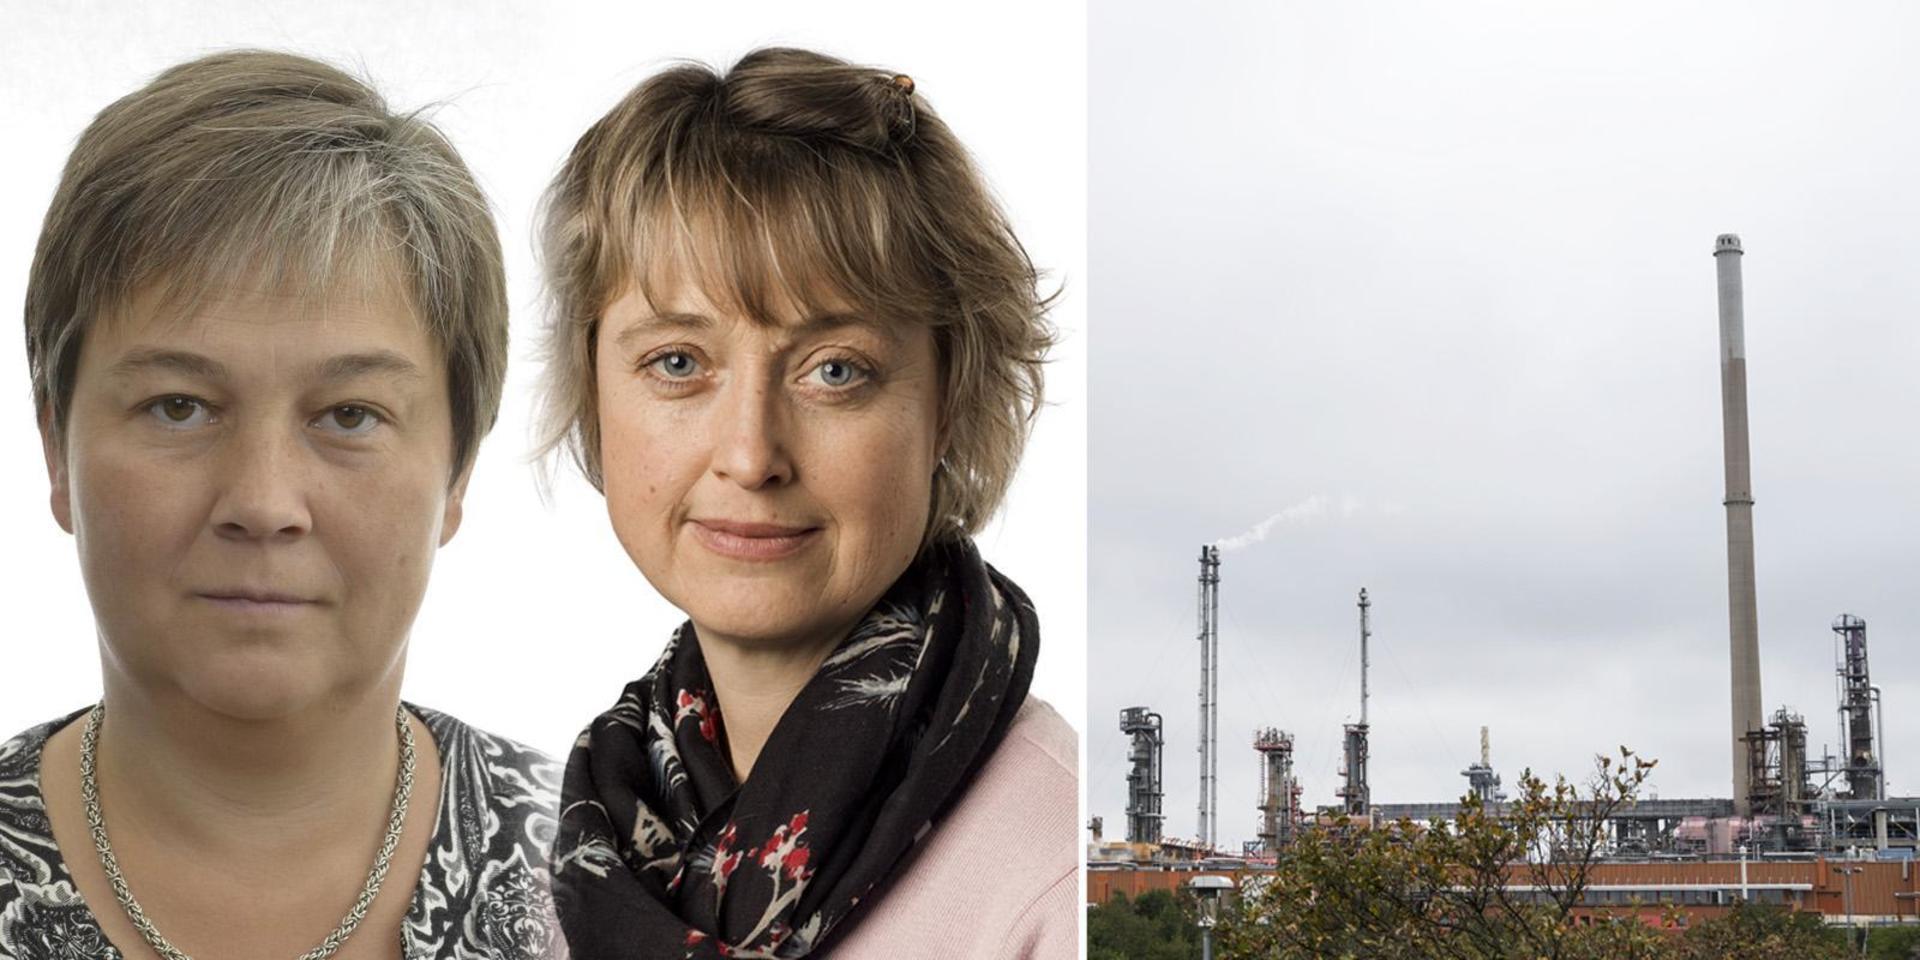 &quot;En utbyggnation av det slag Preem hade tänkt sig hade kraftigt ökat utsläppen av växthusgaser och helt omöjliggjort Sveriges chanser att nå Parisavtalet&quot;, skriver Emma Nohrén och Ulrika Frick från Miljöpartiet.